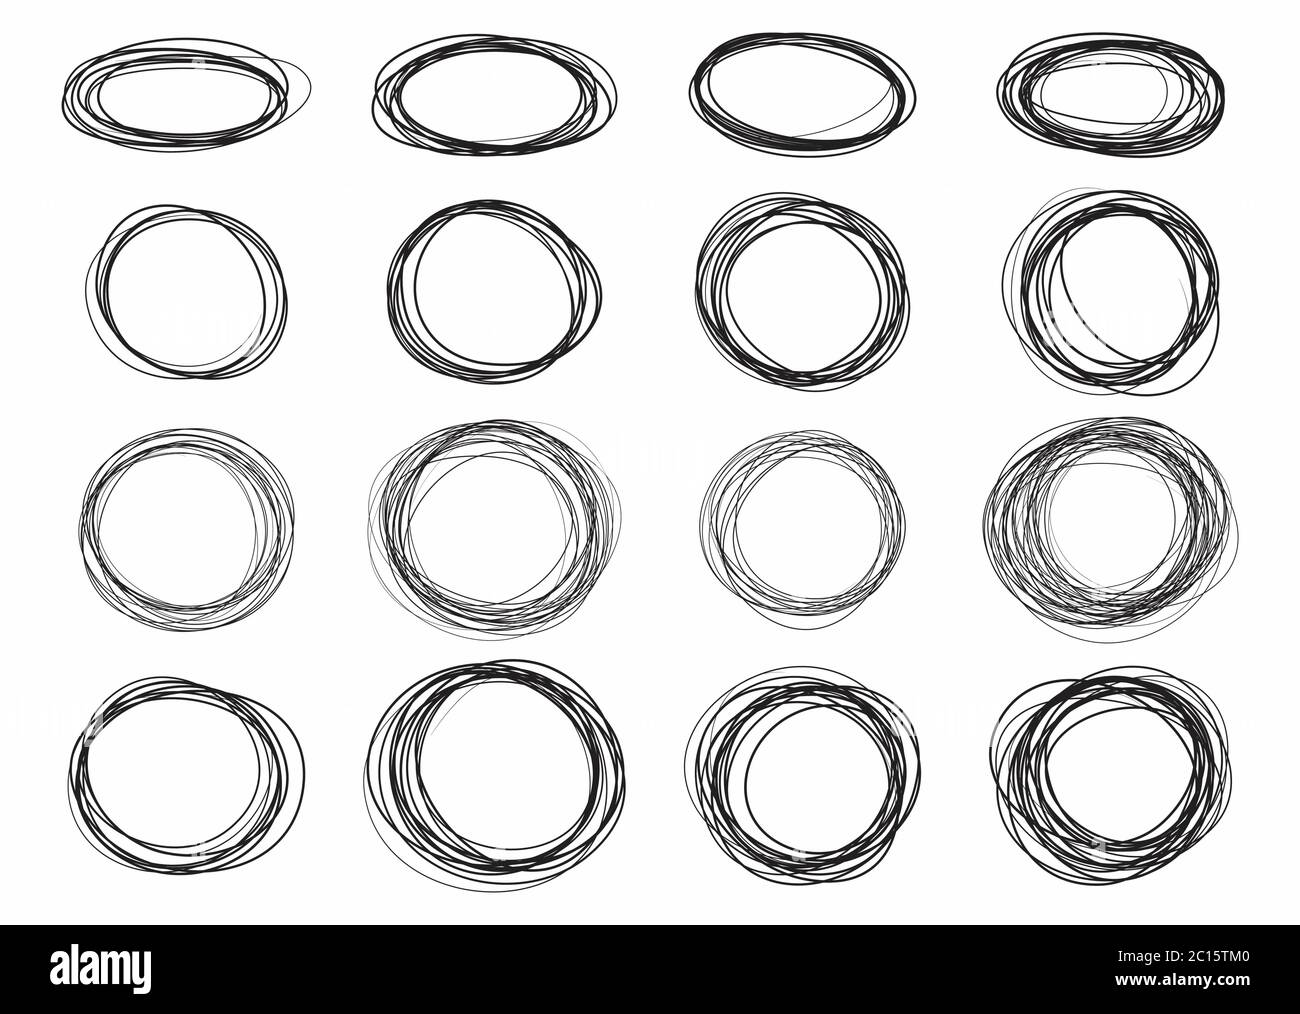 Handgezeichneter Kreis und ovale Linie Skizze, Vektor-Design Stock Vektor